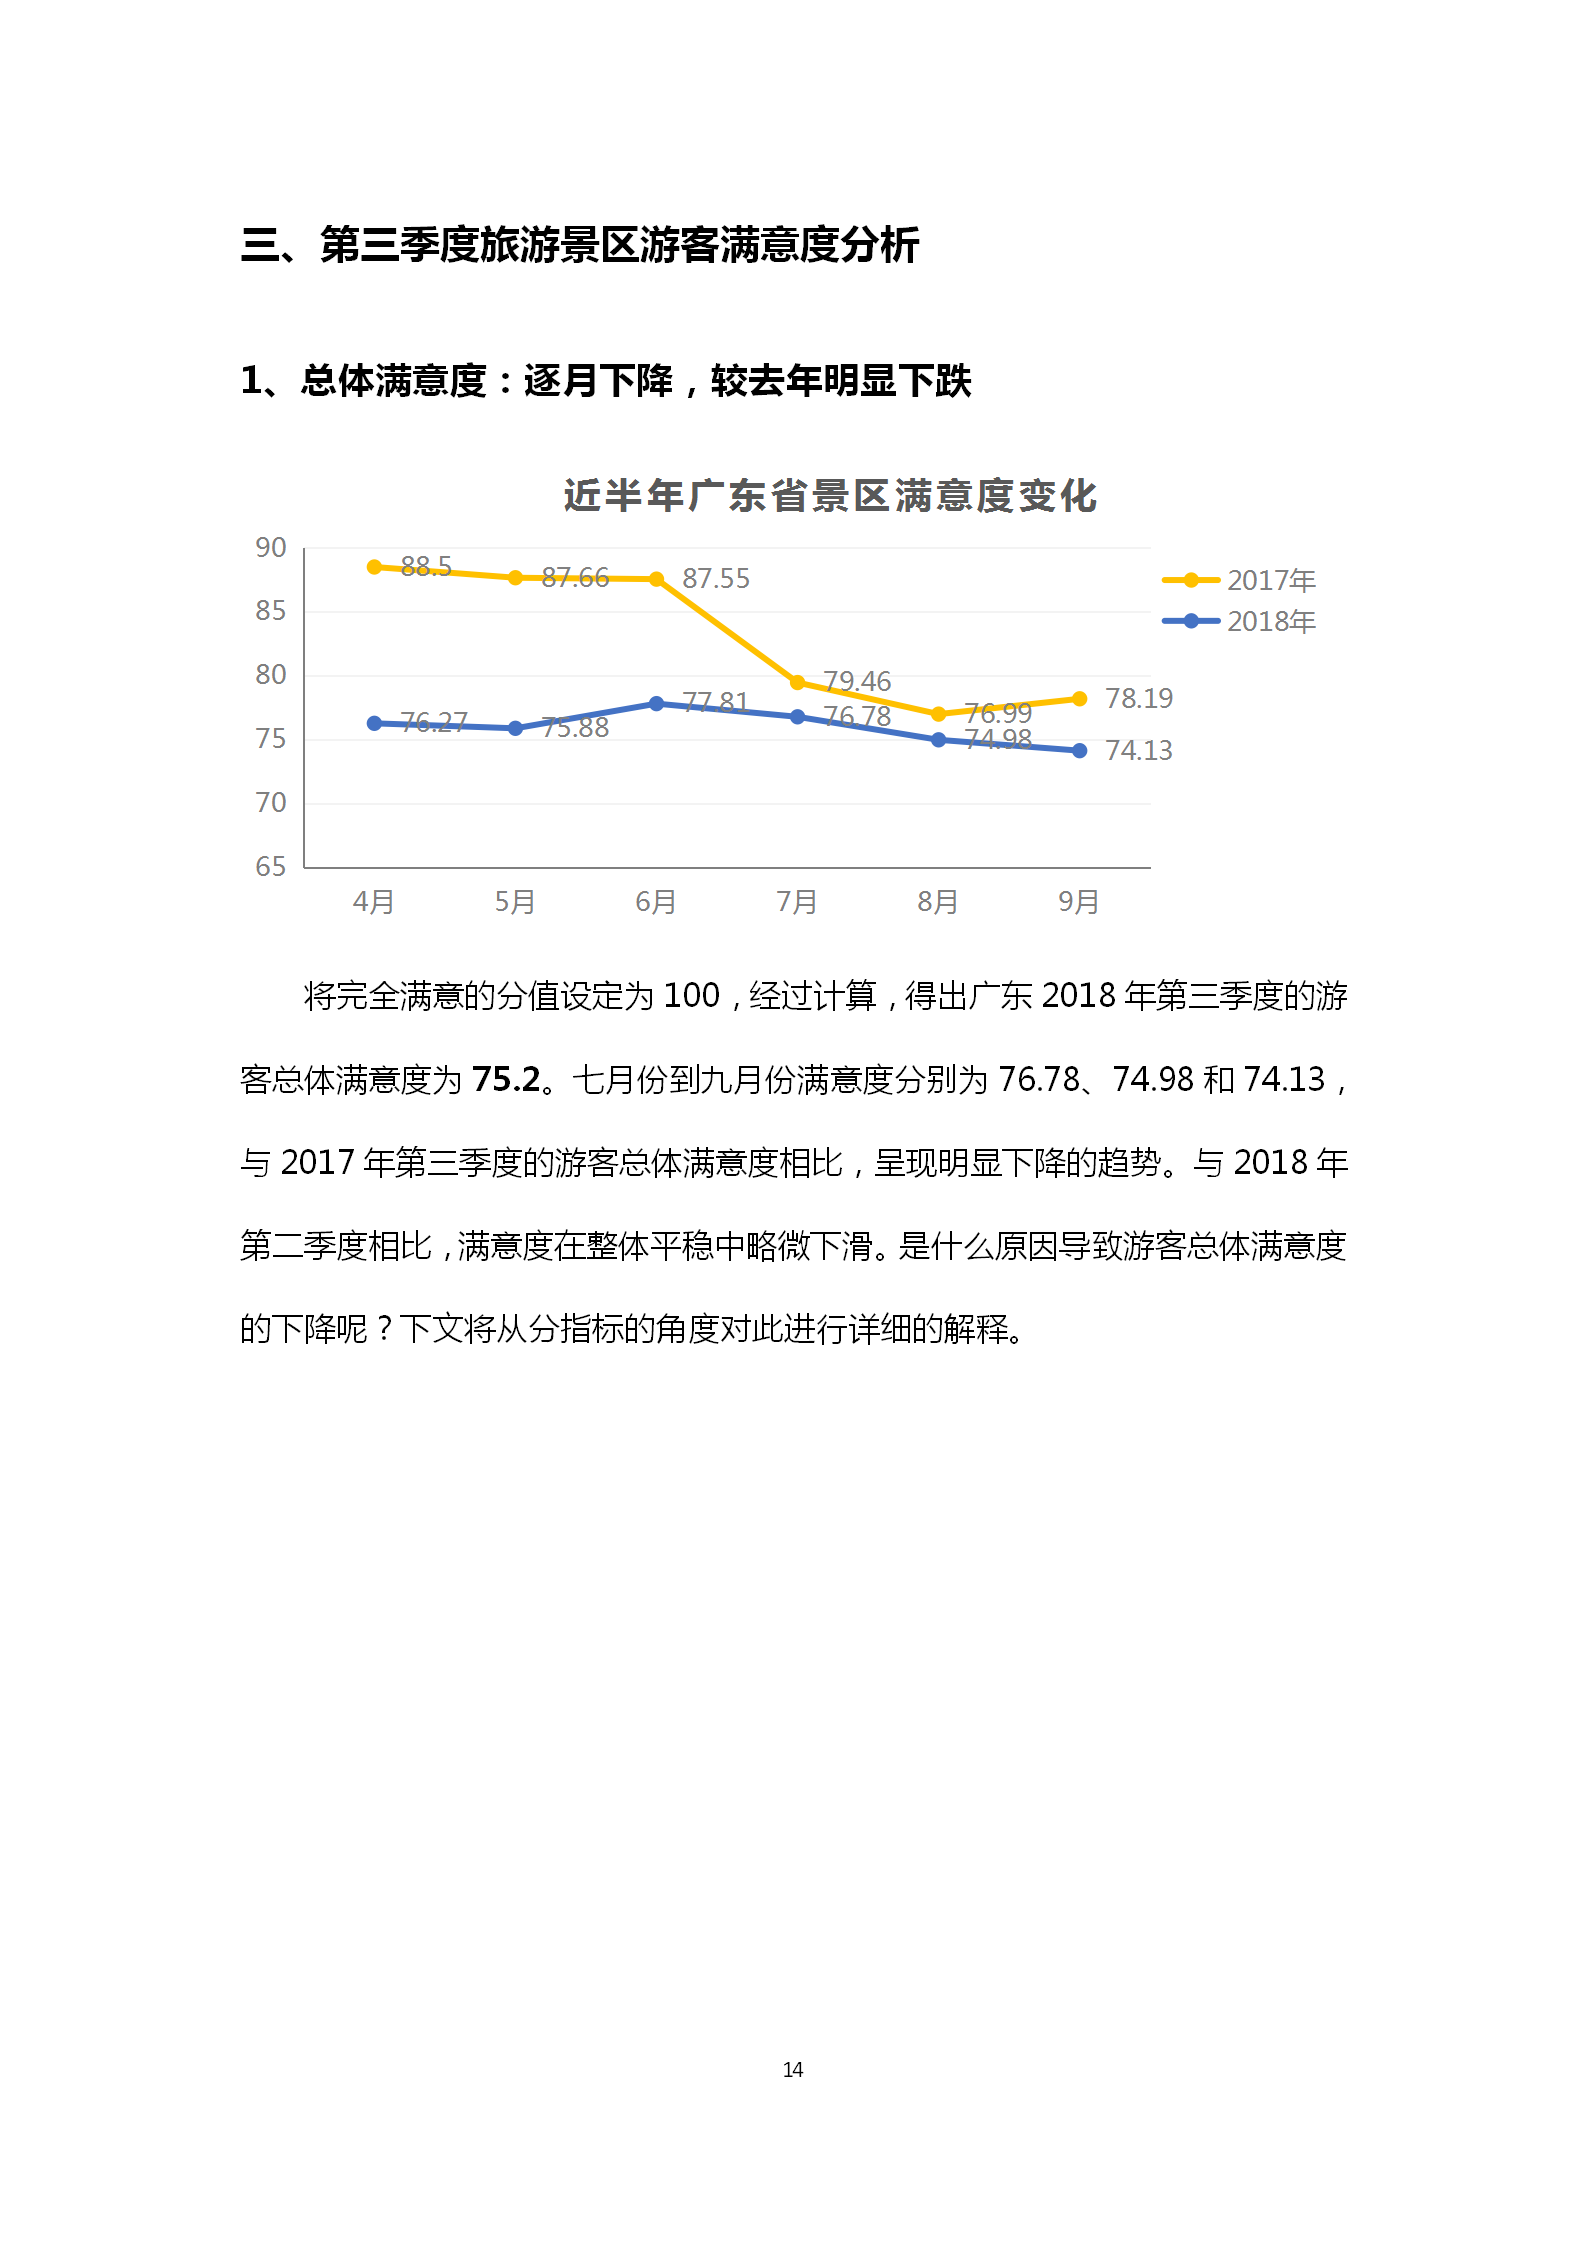 广东省旅游景区游客满意度大数据调查报告-2018年第三季度20181106_15